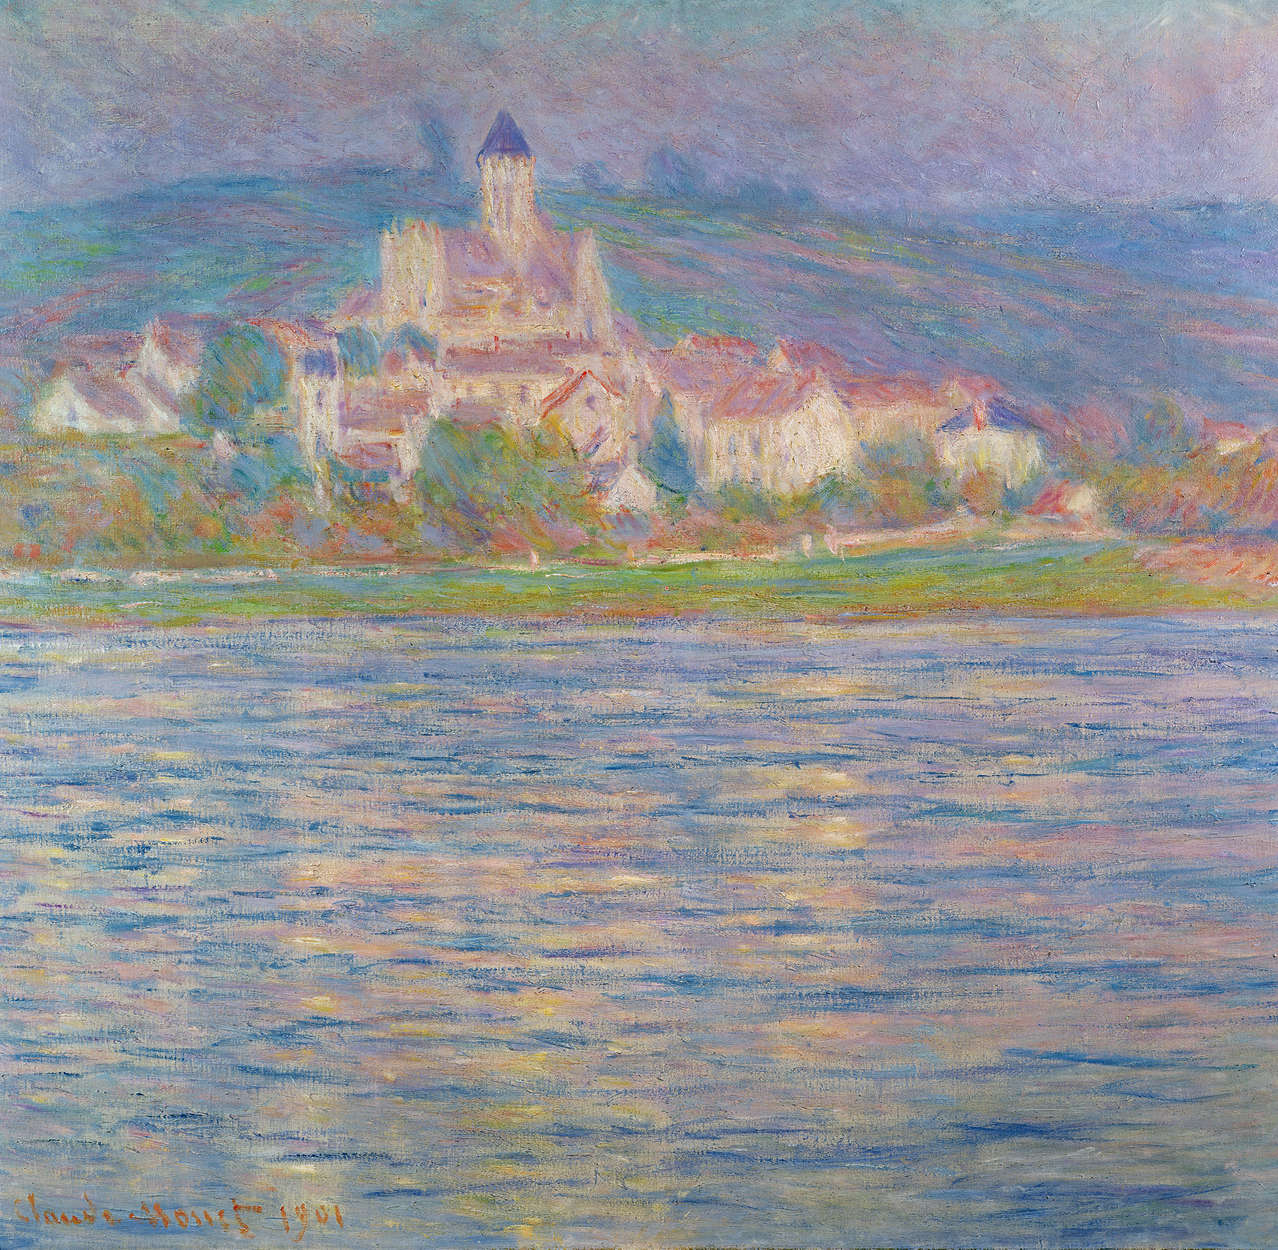             Mural "Vétheuil" de Claude Monet
        